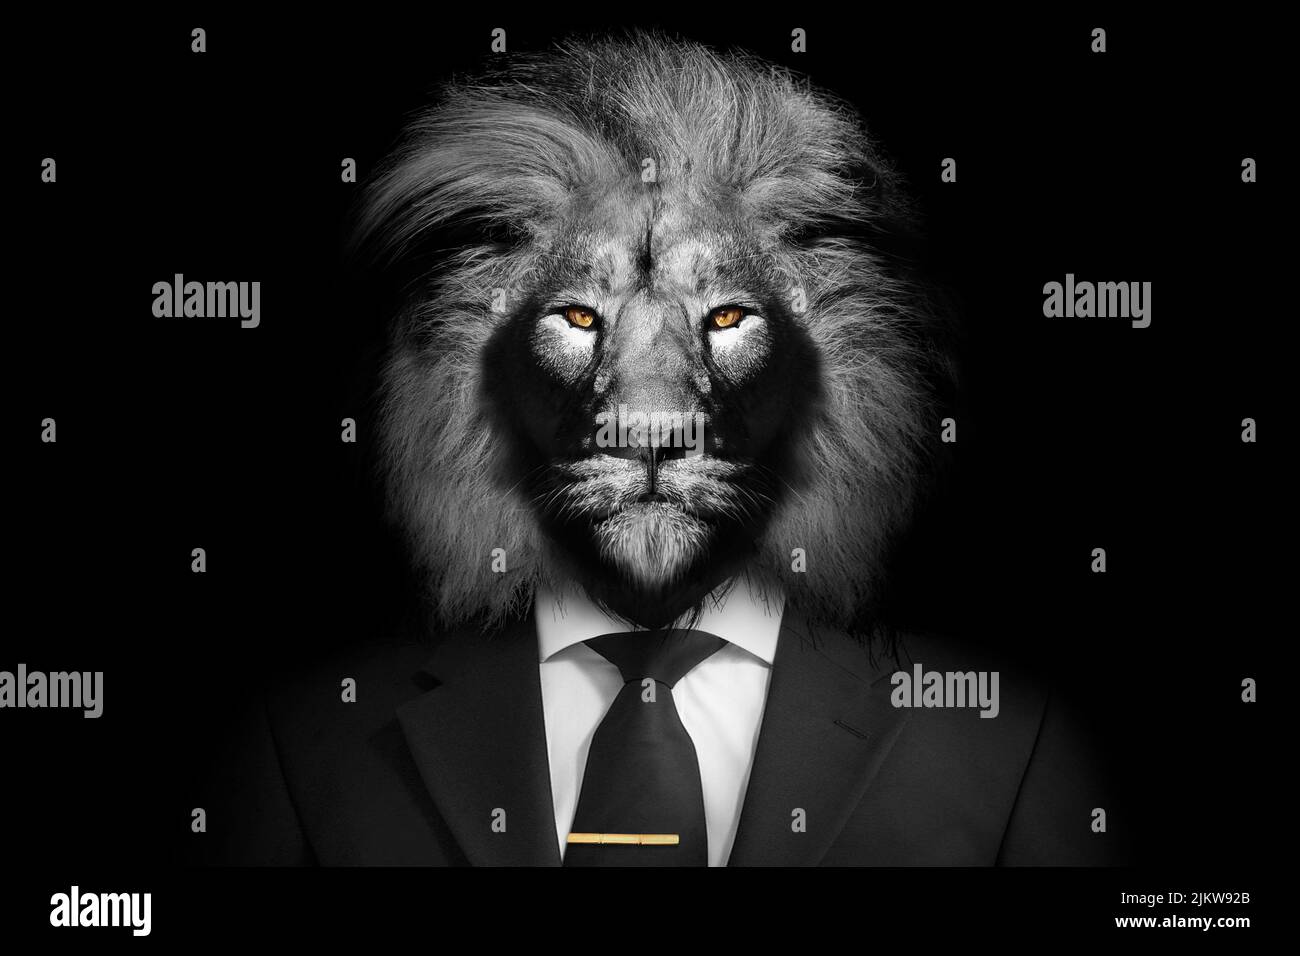 Eine Graustufenaufnahme eines Löwen mit einem edlen Look in einem Anzug Stockfoto